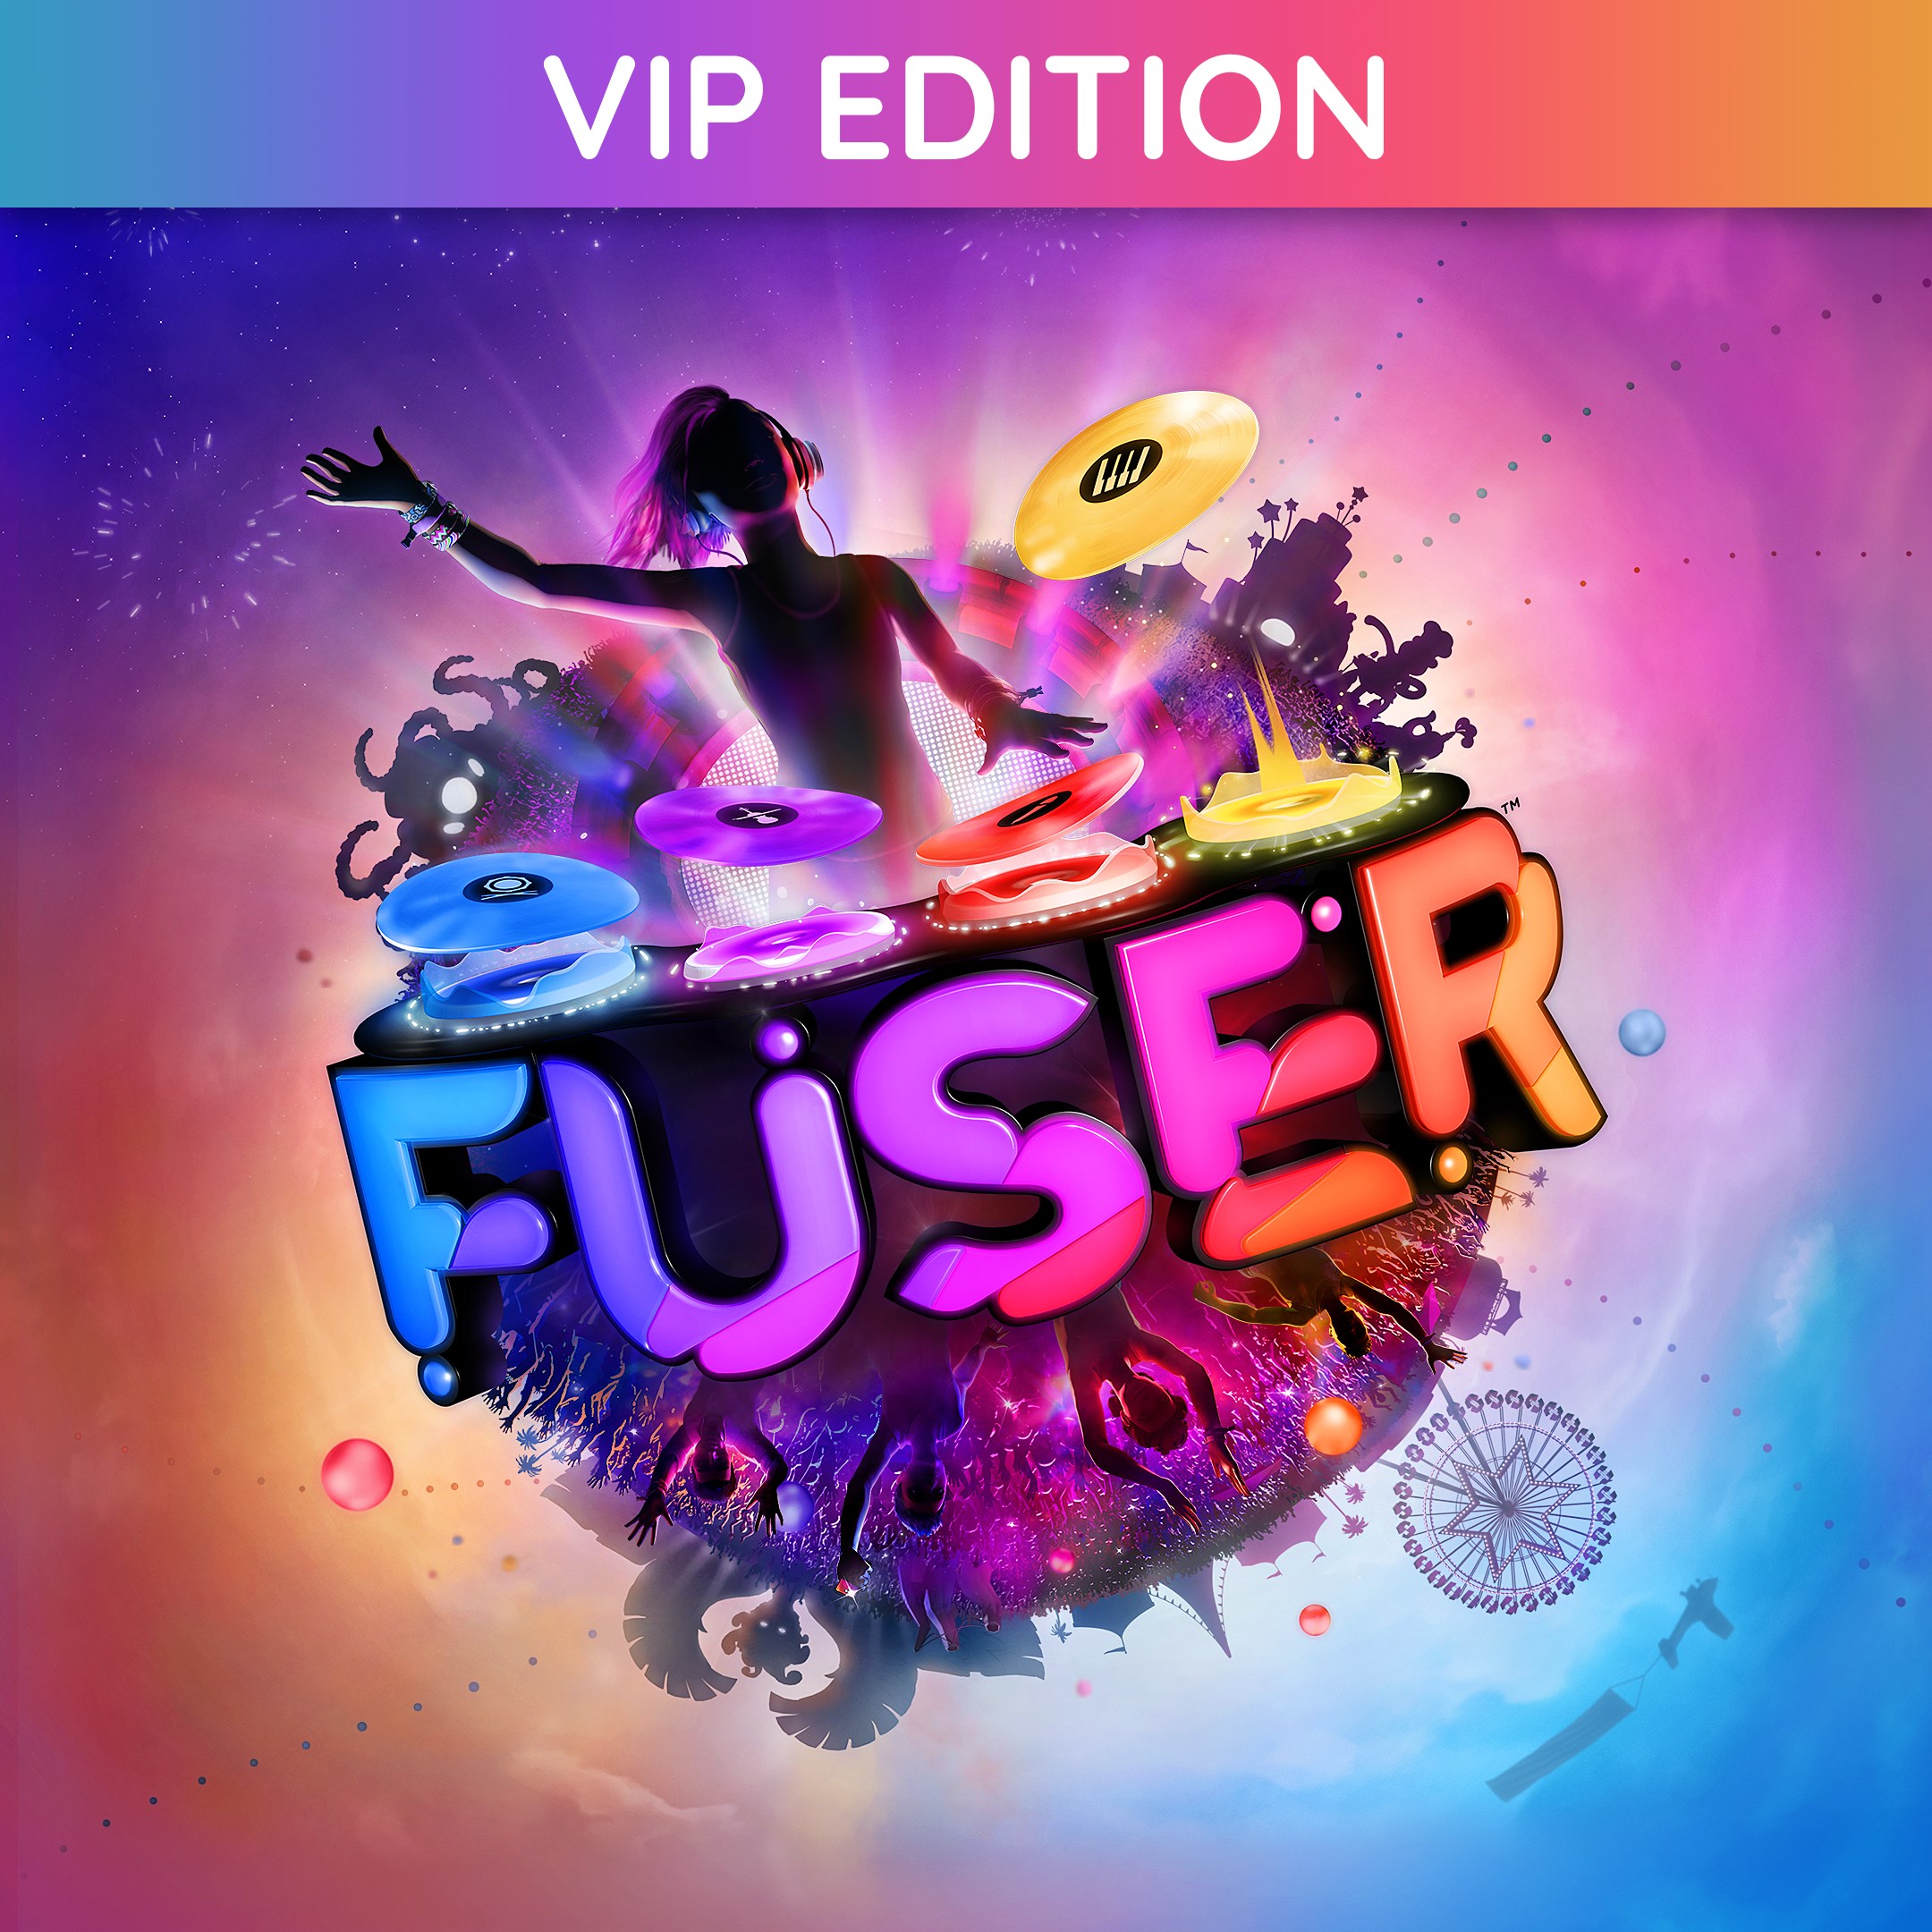 FUSER™ VIP Edition Pre-Order